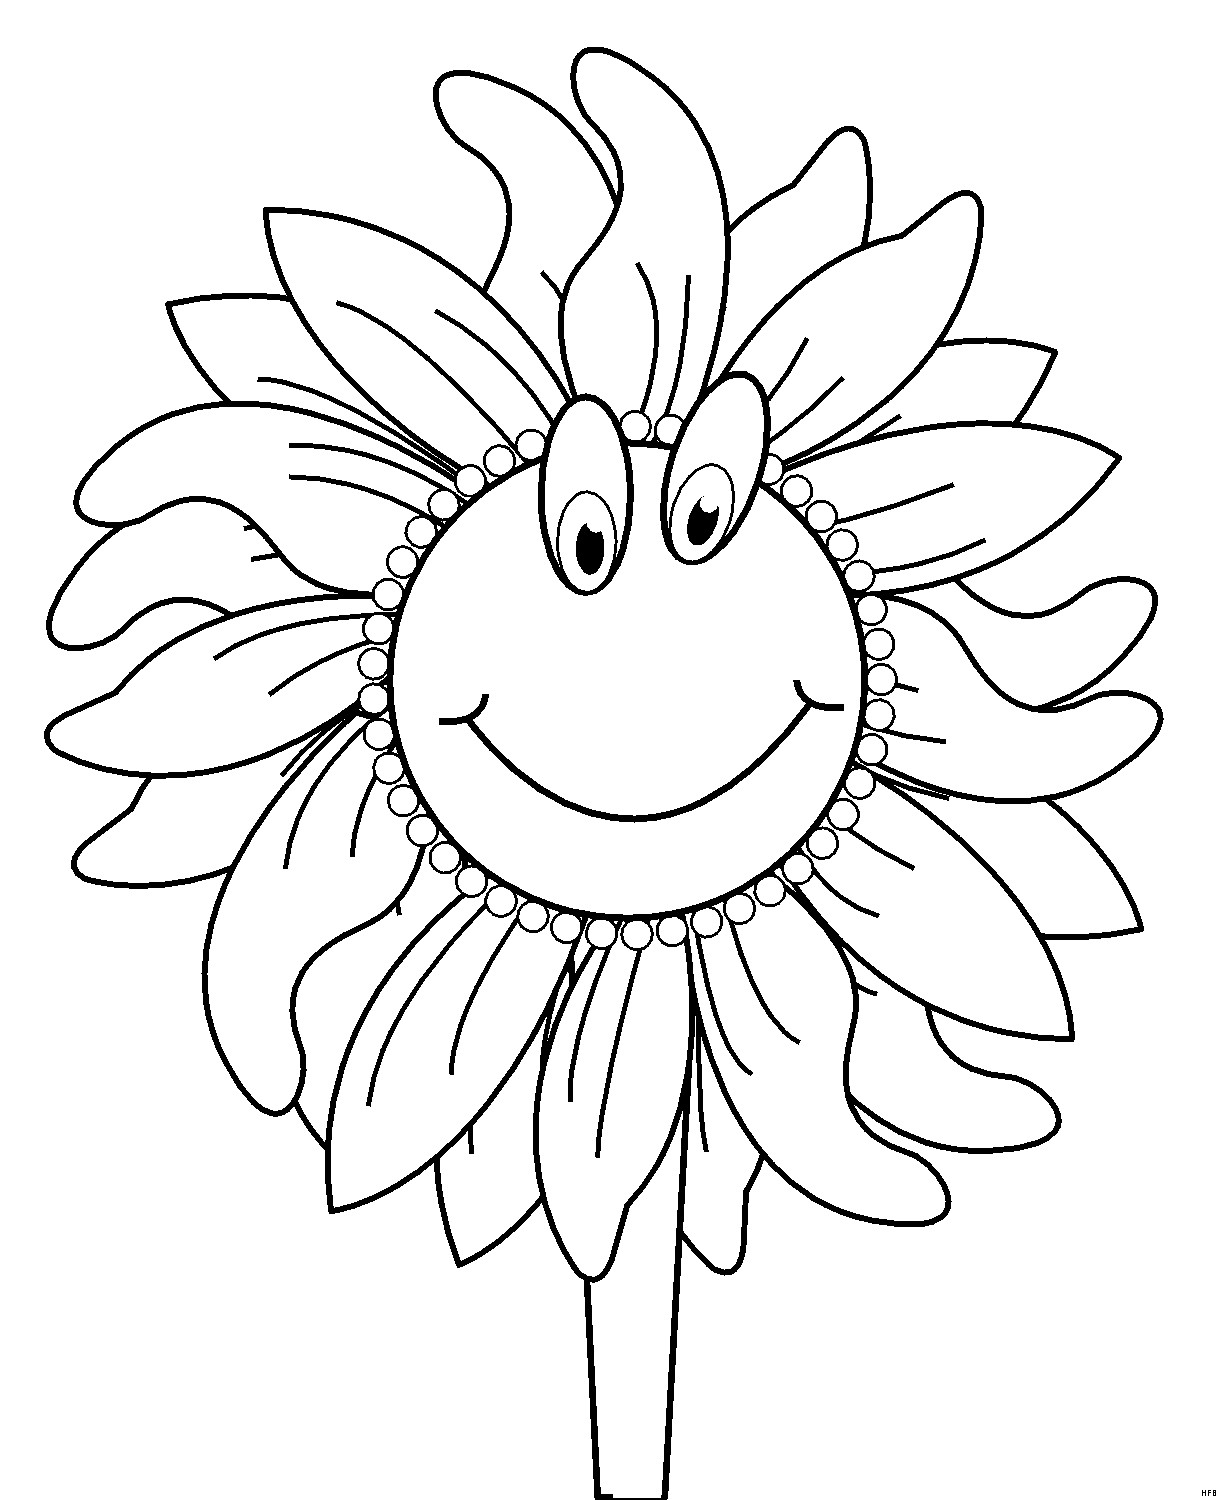 Sonnenblume Malvorlagen Kostenlos
 Sonnenblume Mit Gesicht Ausmalbild & Malvorlage ics